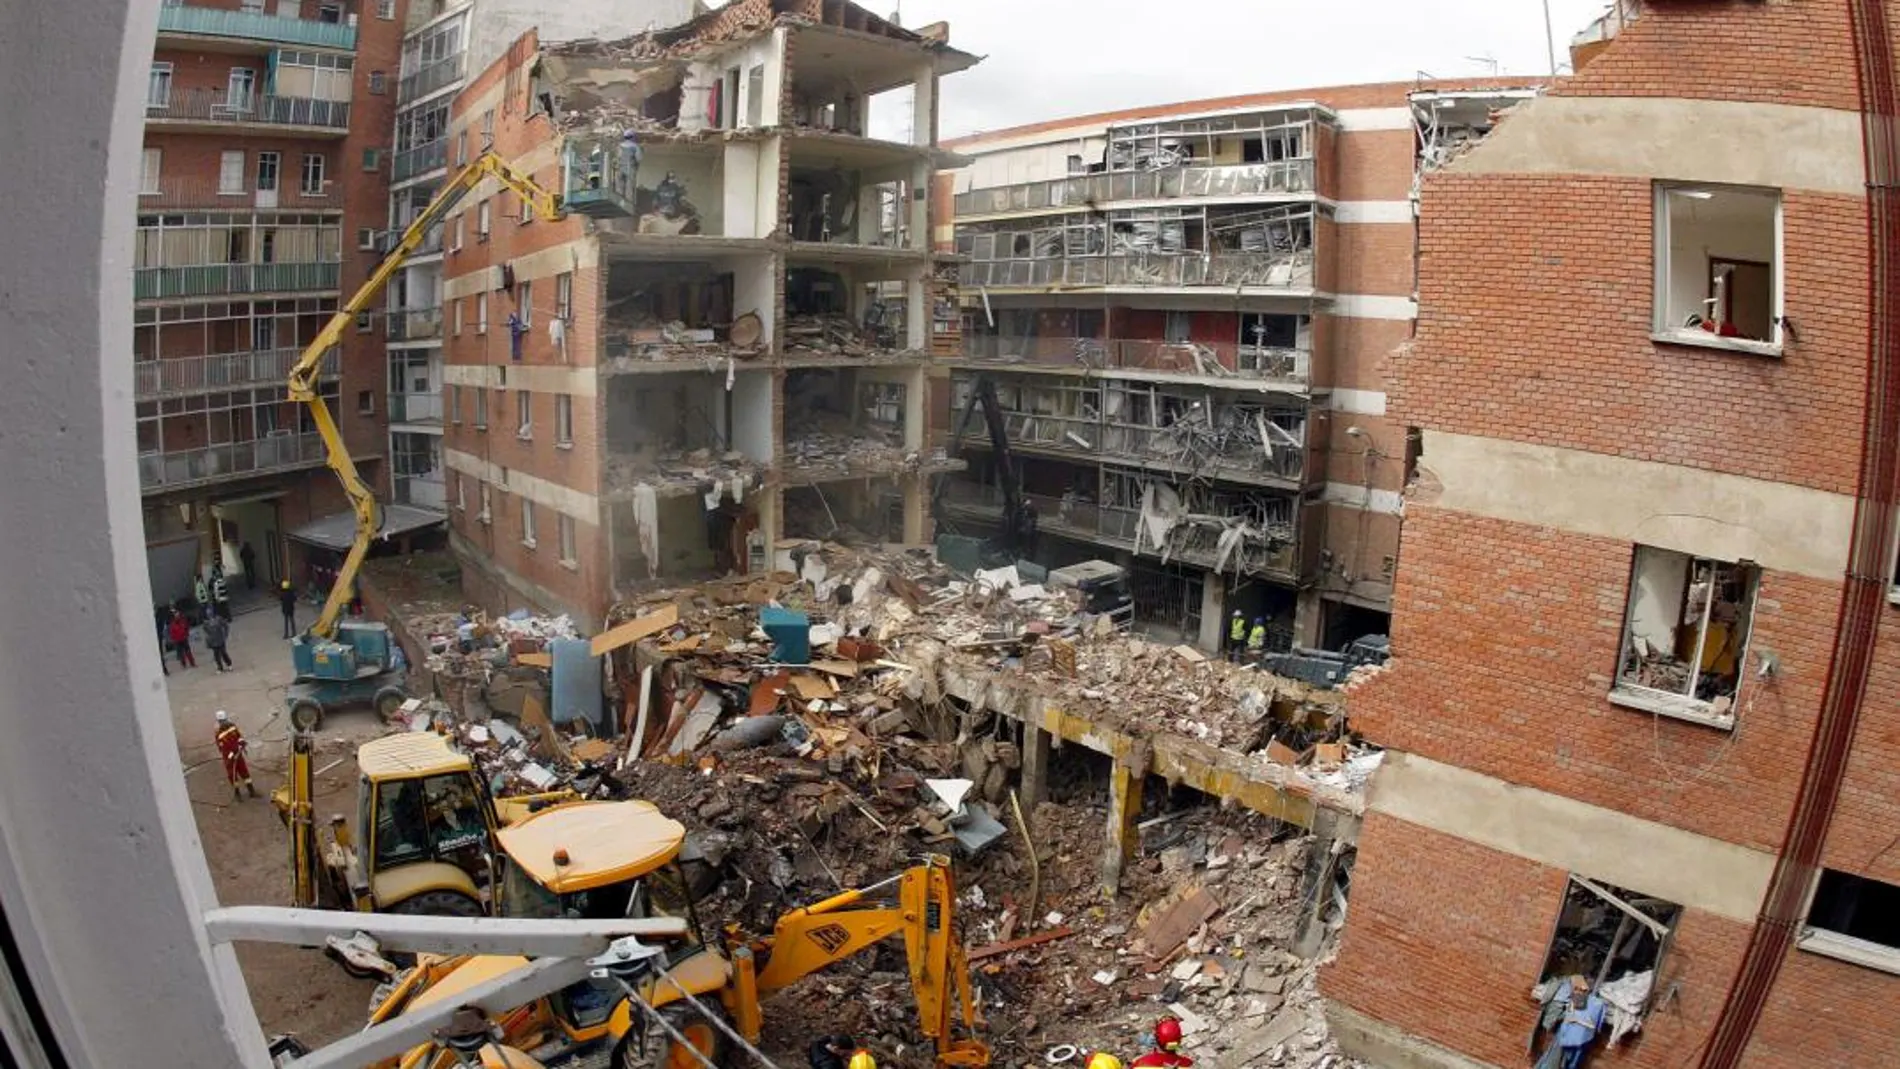 Labores de desescombro tras la explosión en la calle Gaspar Arroyo de Palencia